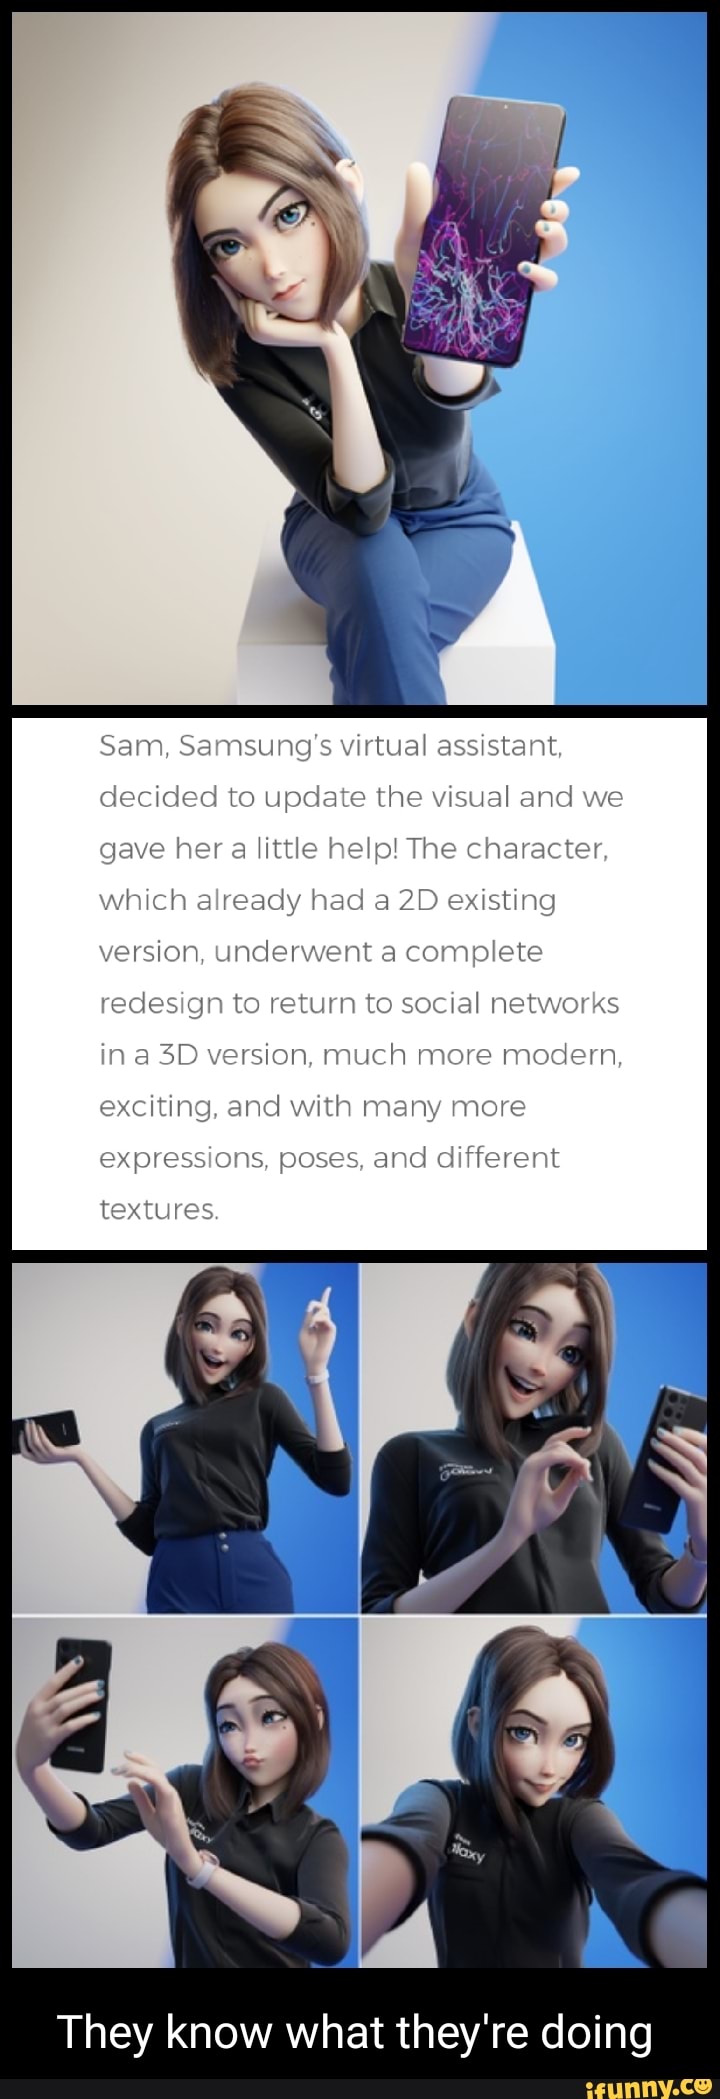 Samsung Sam 3D vs 2D, Samsung Sam